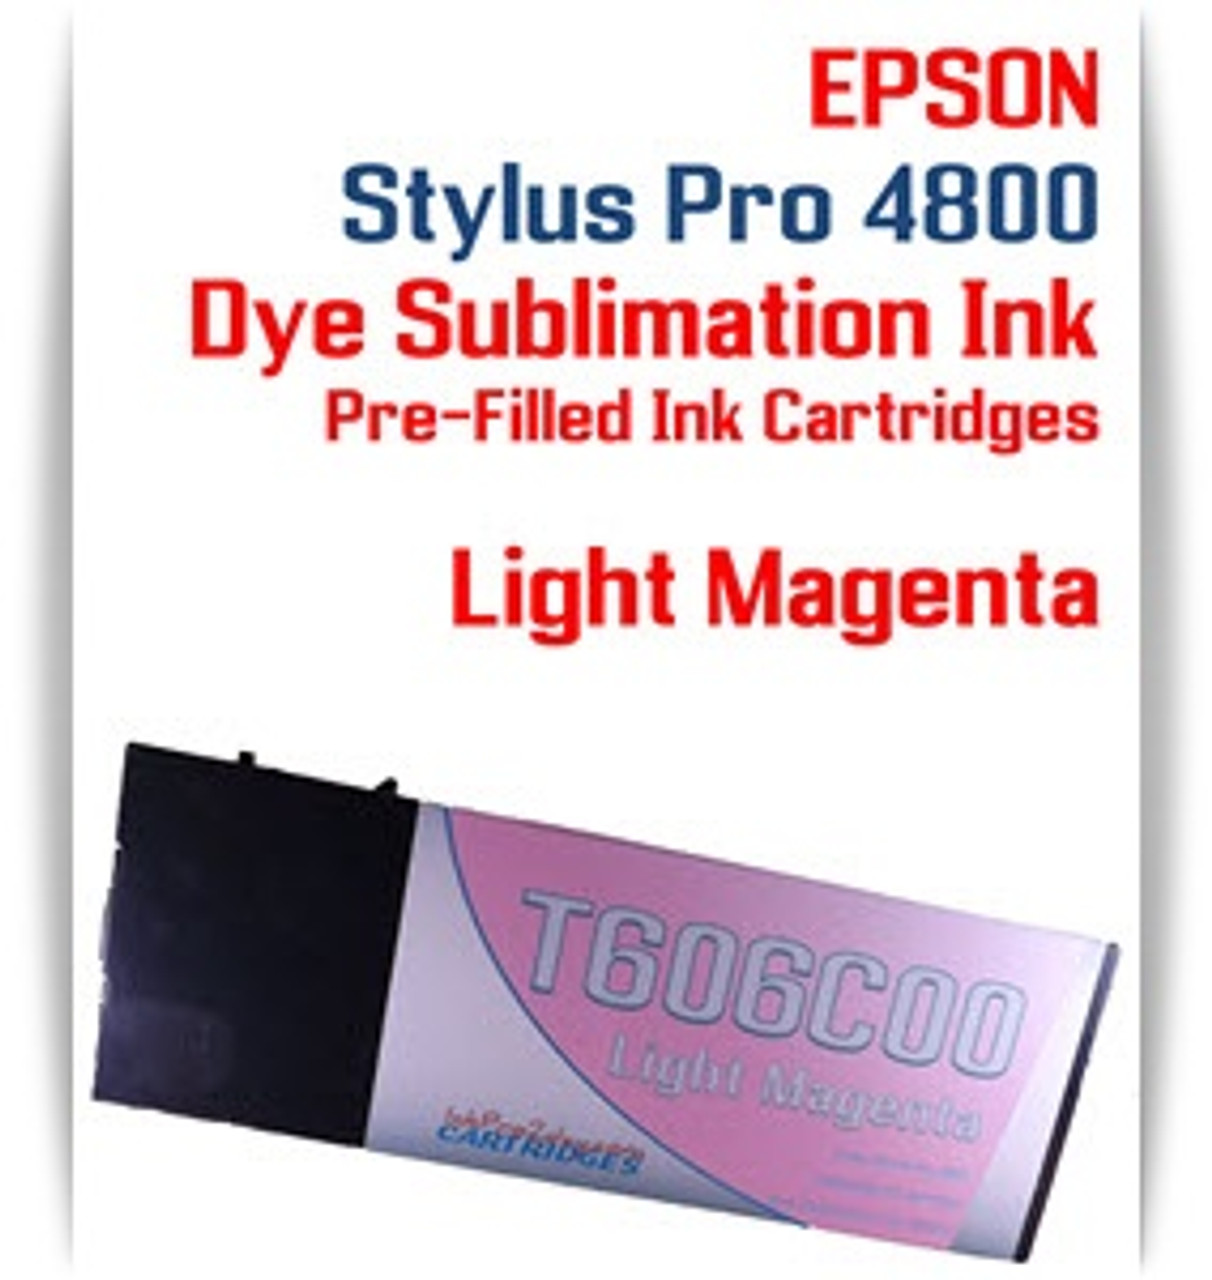 Light Magenta Epson Stylus Pro 4800 Dye Sublimation Ink Cartridges 220ml